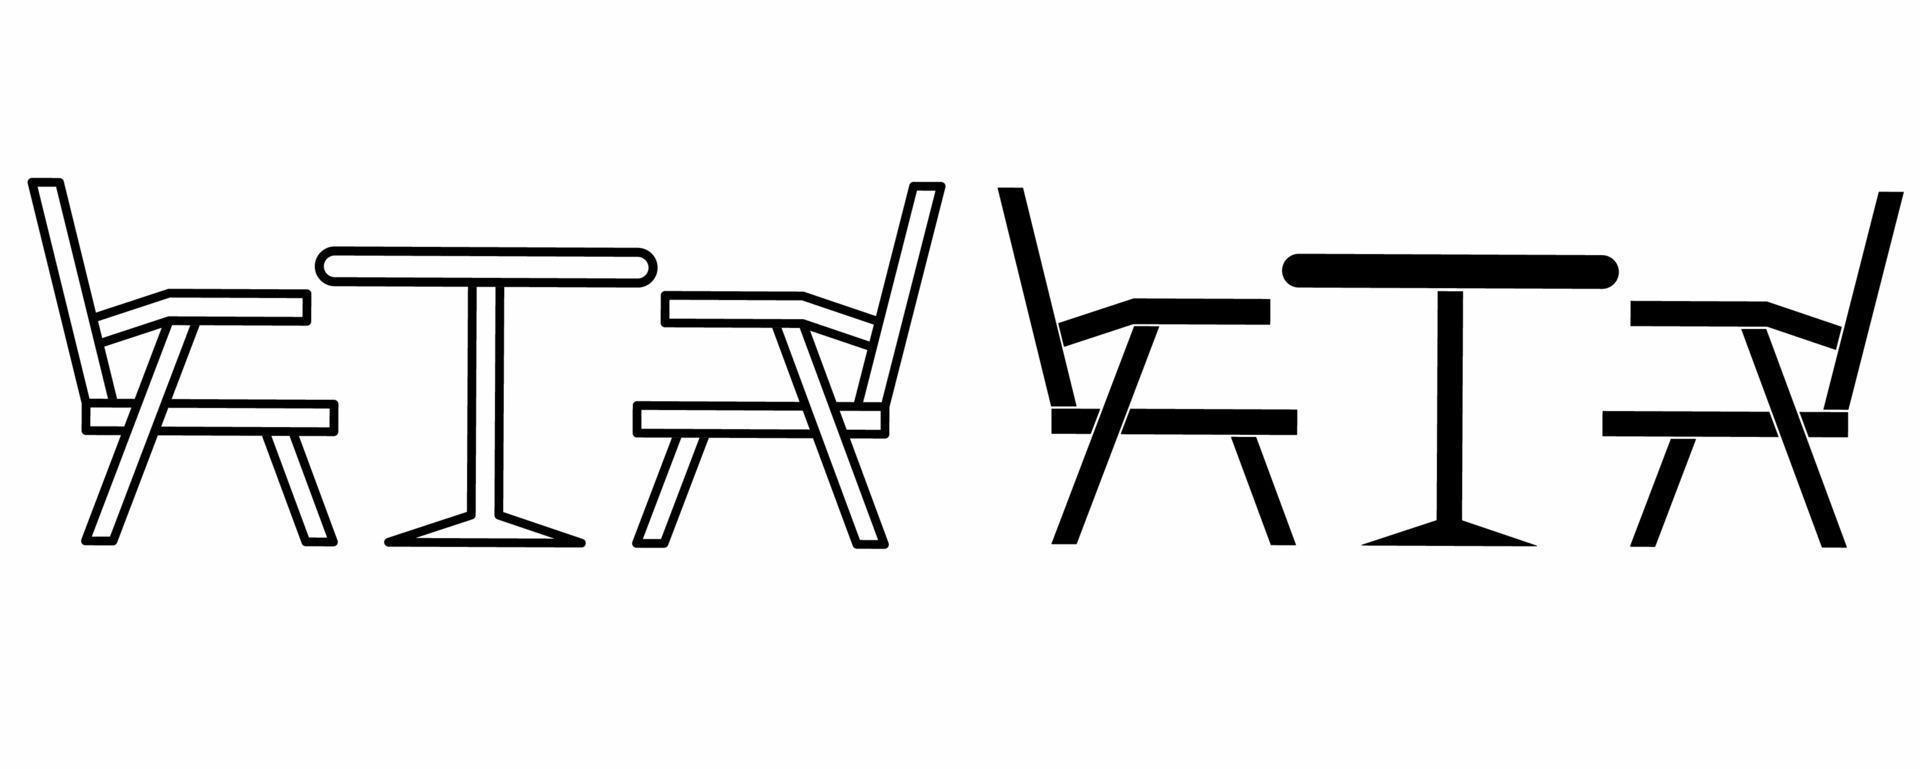 contours silhouette table à manger et chaise icon set isolé sur fond blanc vecteur